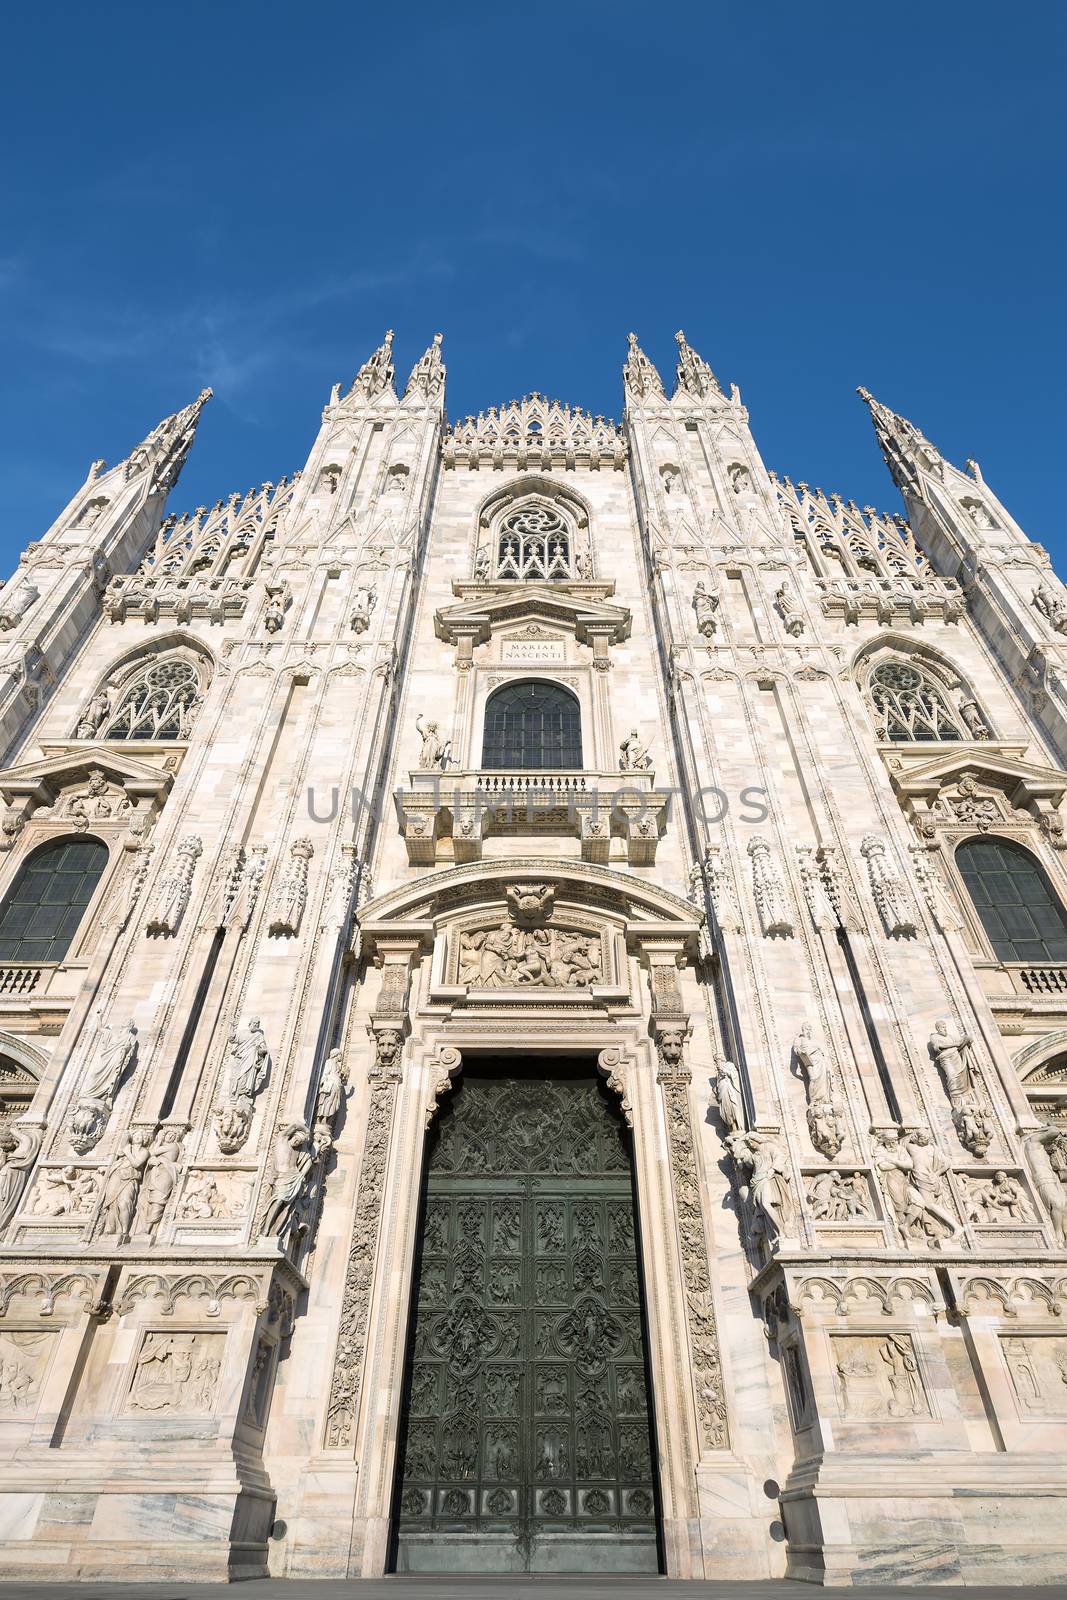 Milan Cathedral door (Duomo di Milano), Italy. Dedicated to Santa Maria Nascente